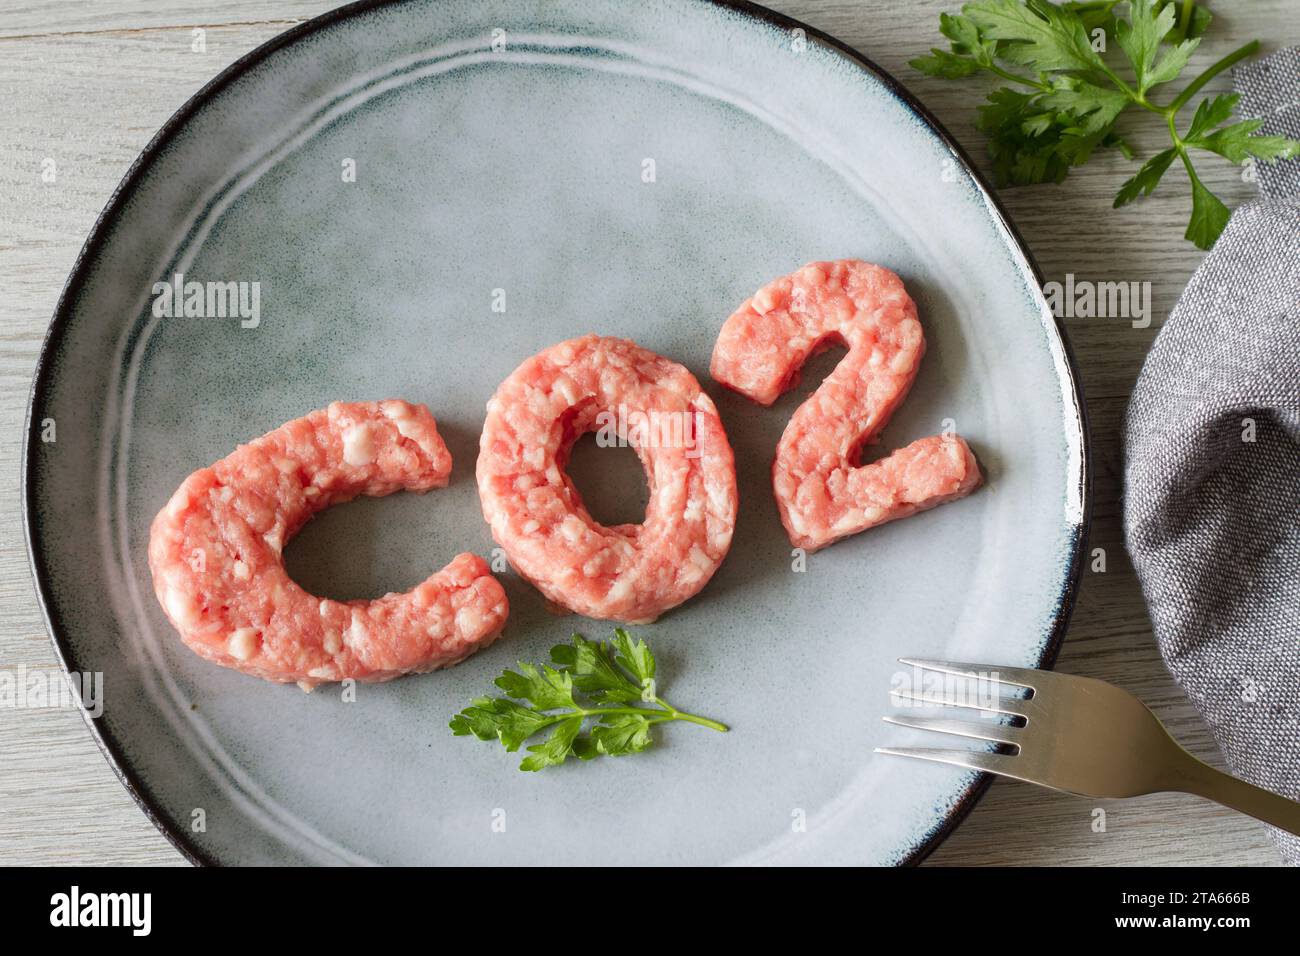 Concept d'empreinte carbone, consommation de viande et émissions de CO2, viande sur plaque en forme de co2, captage Banque D'Images